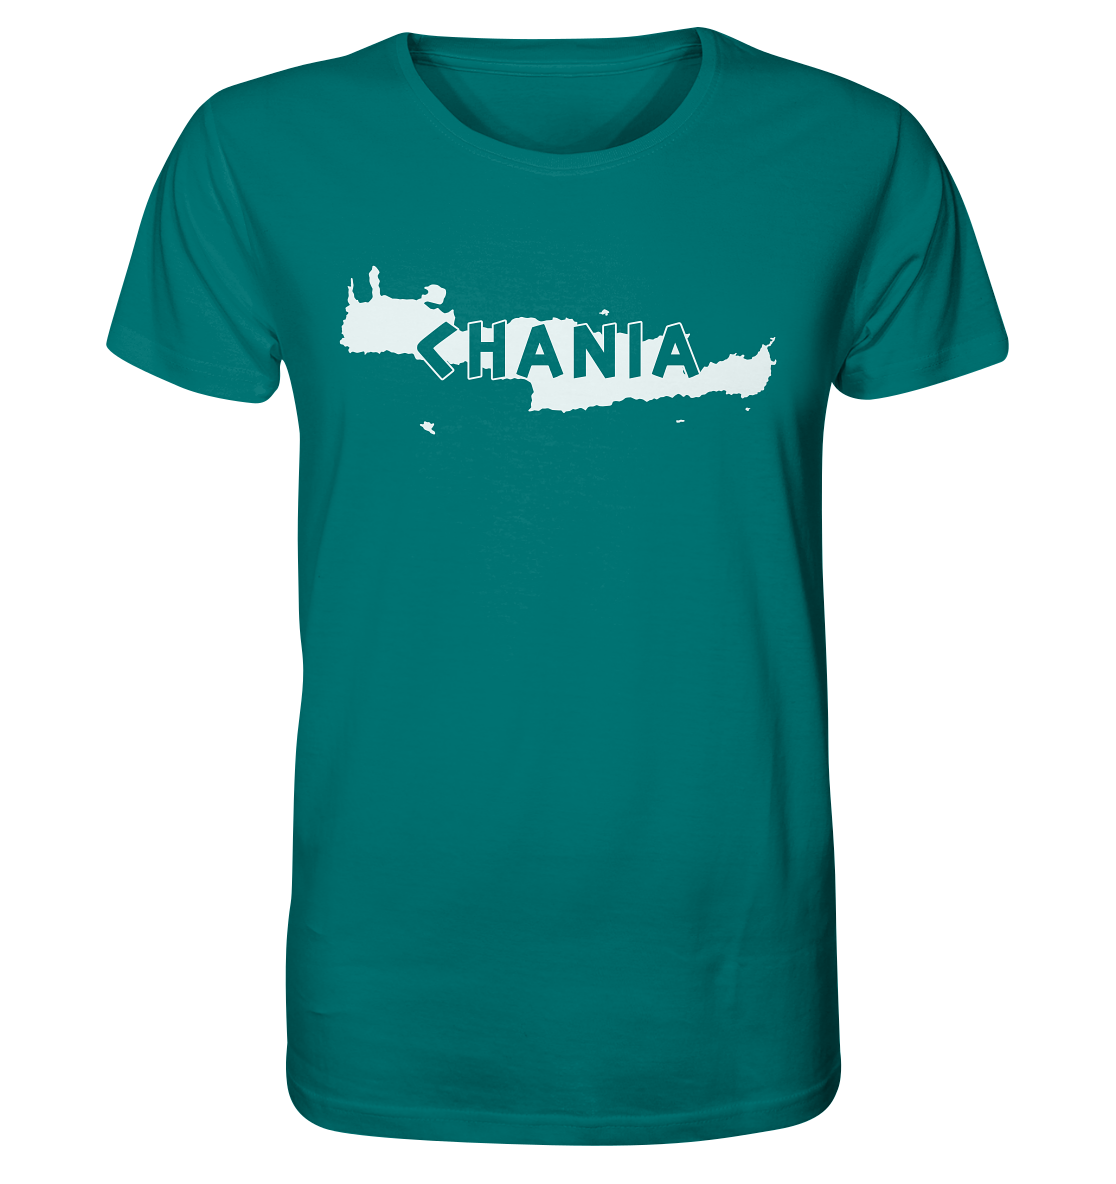 Chania Kreta Silhouette - Organic Shirt